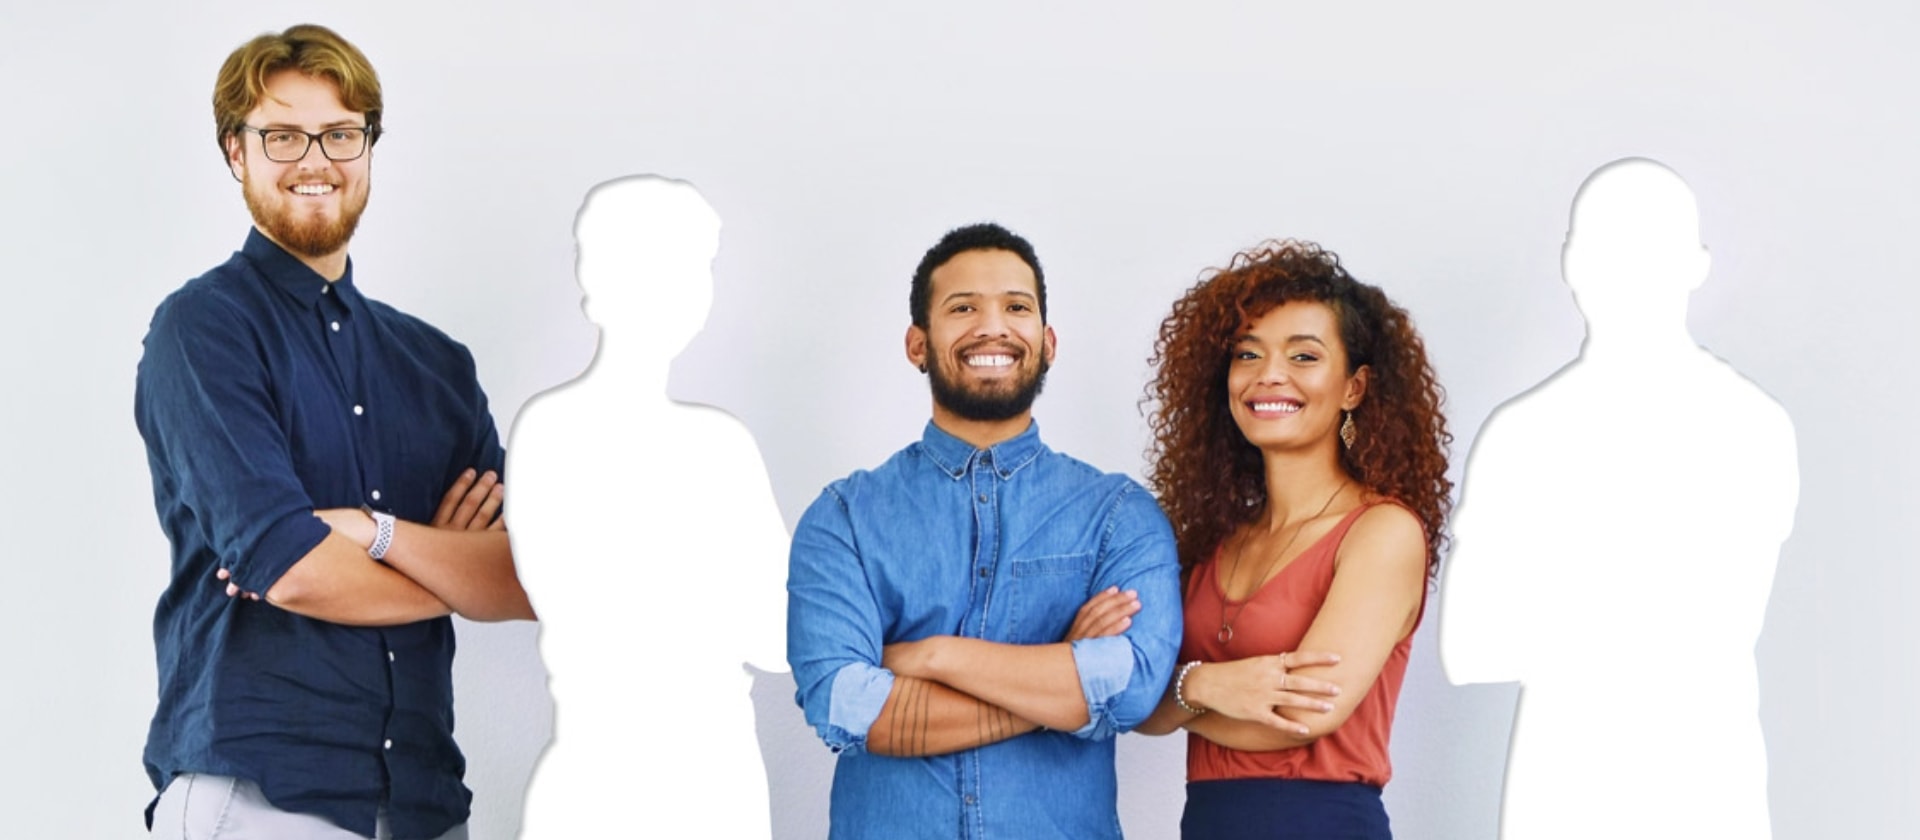 Gruppenfoto von fünf Beschäftigten. Zwei von drei Personen sind als weiße Fläche dargestellt - sie fehlen.